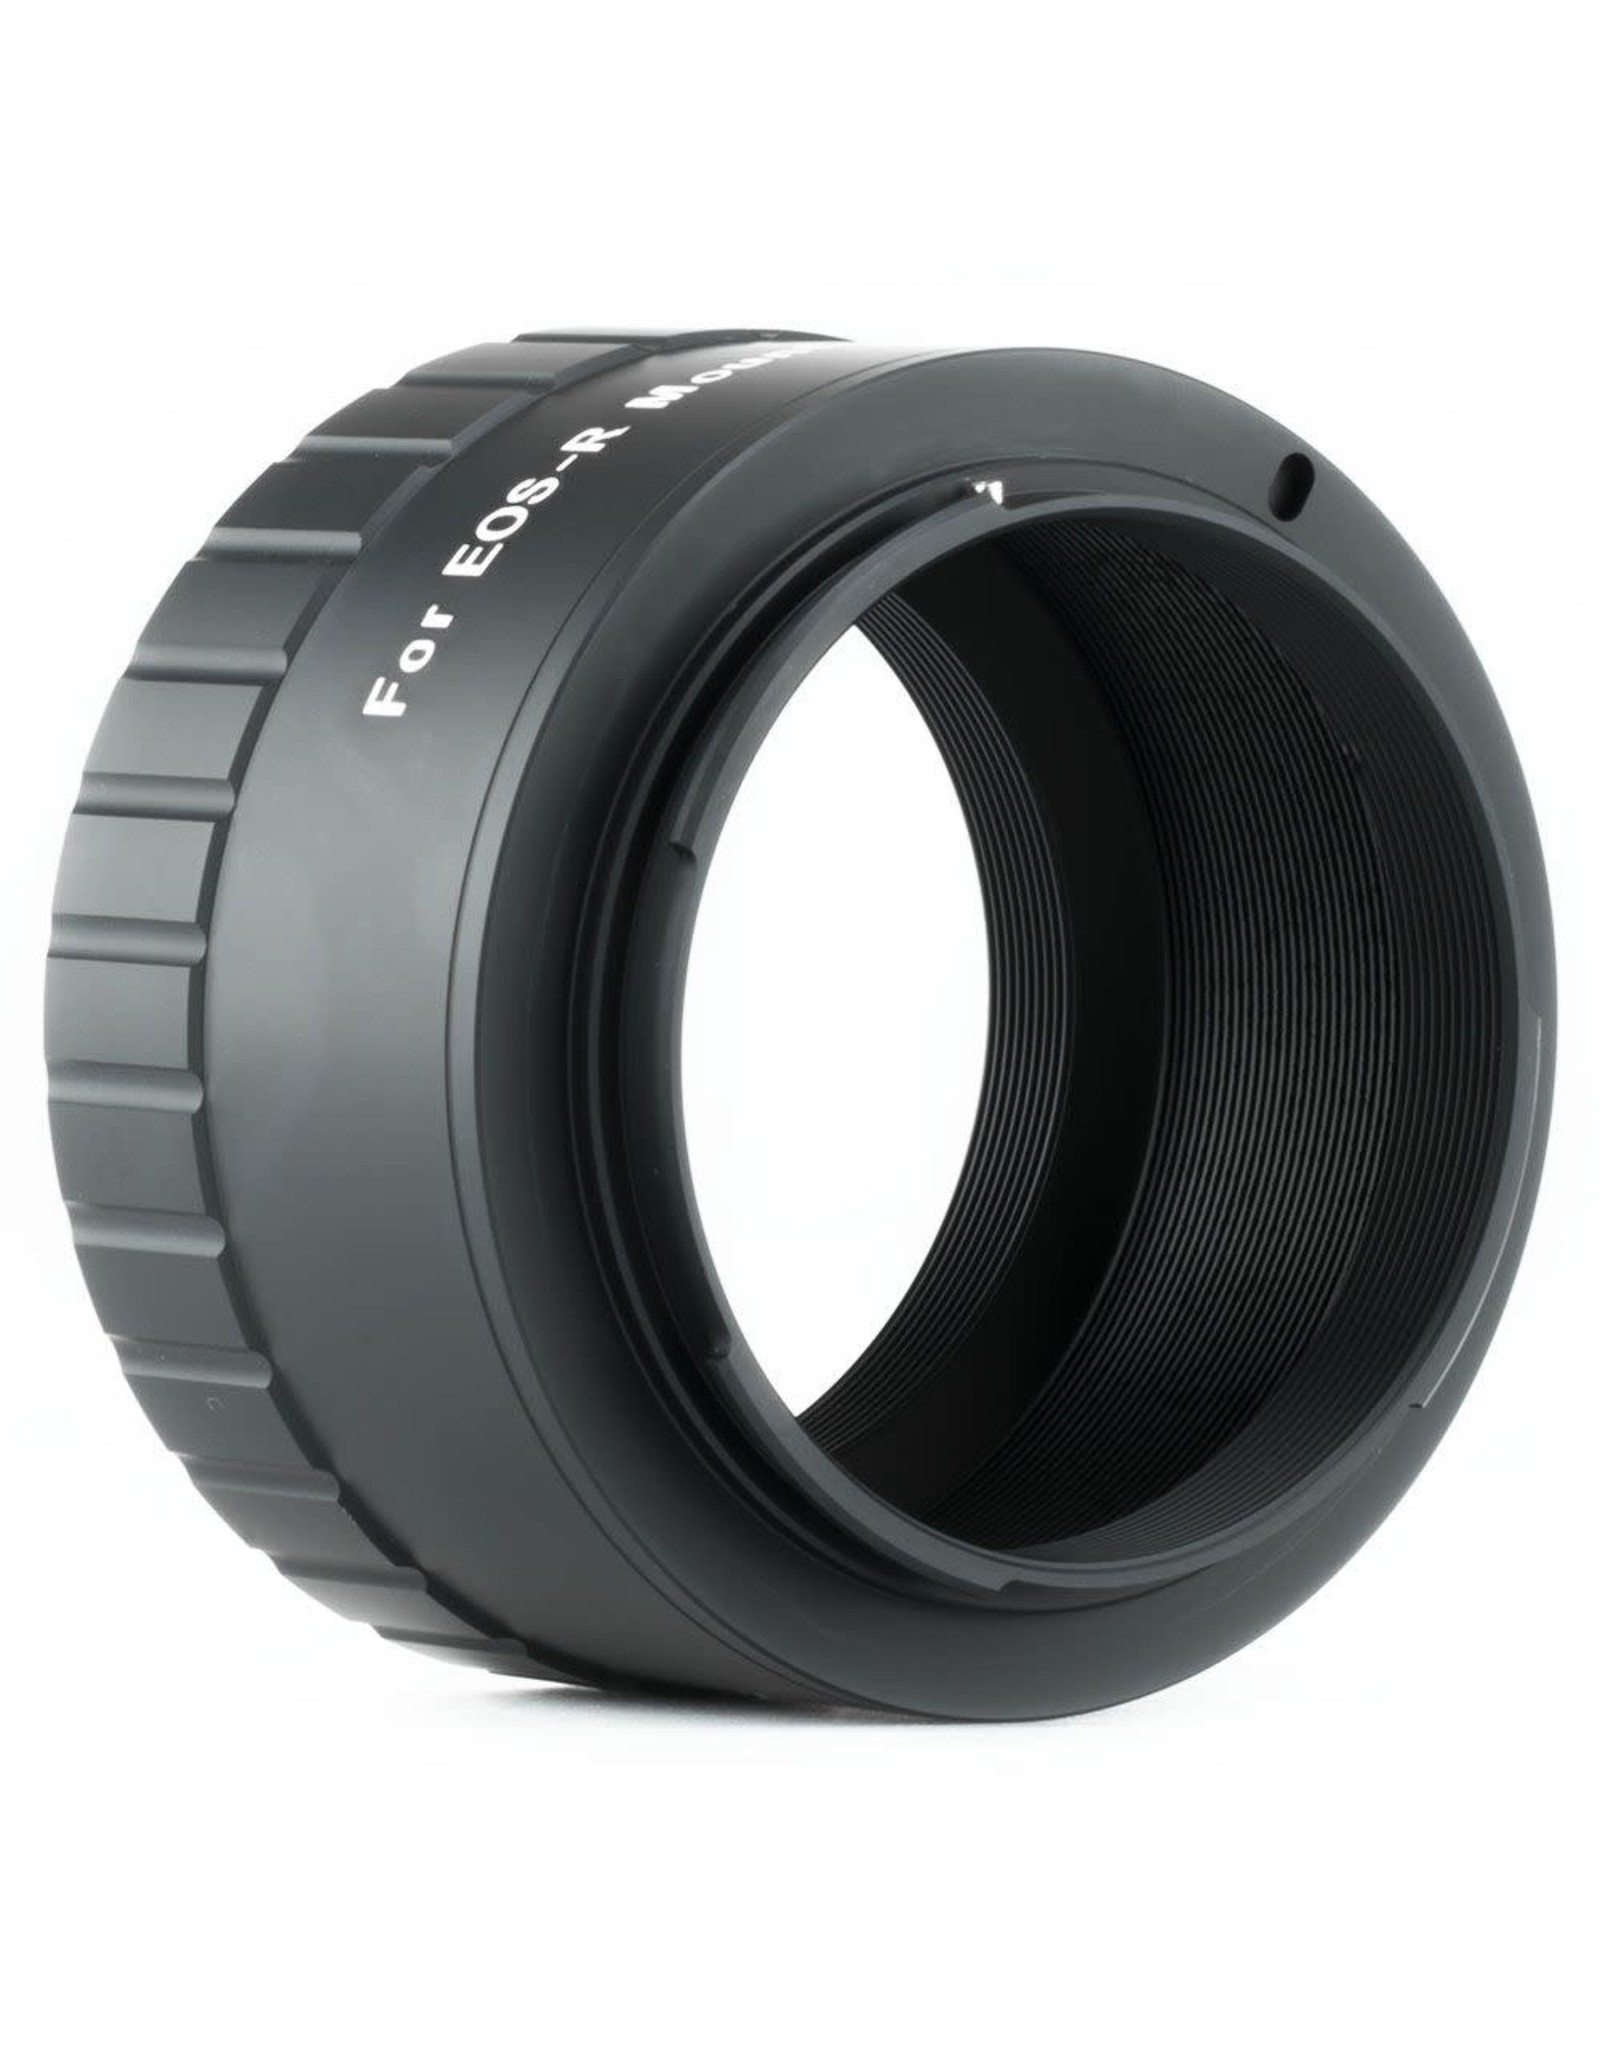 William Optics William Optics 48 mm T-Mount for Canon EOS R Mirrorless Cameras